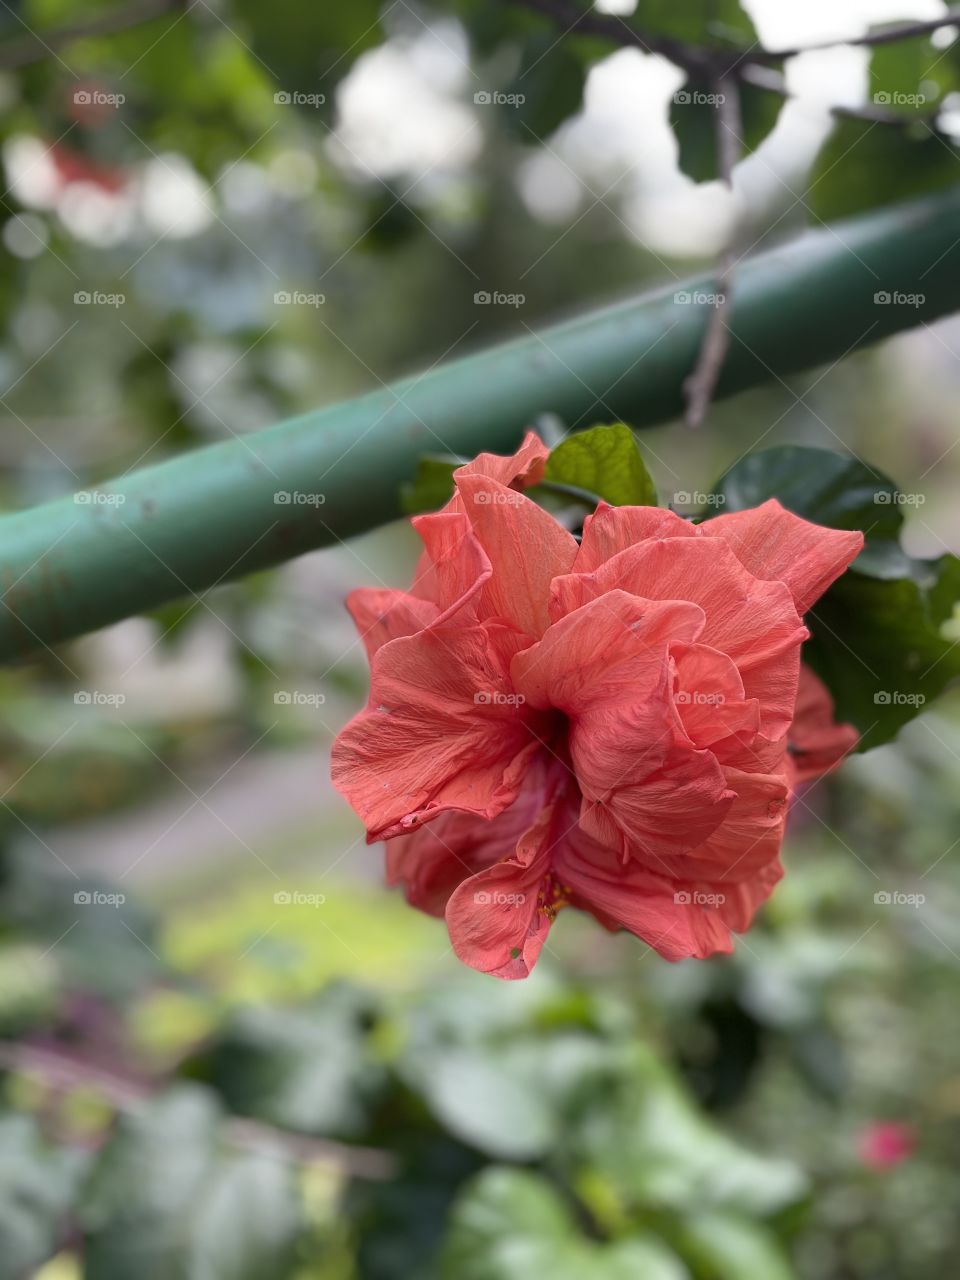 Red gumamela flower